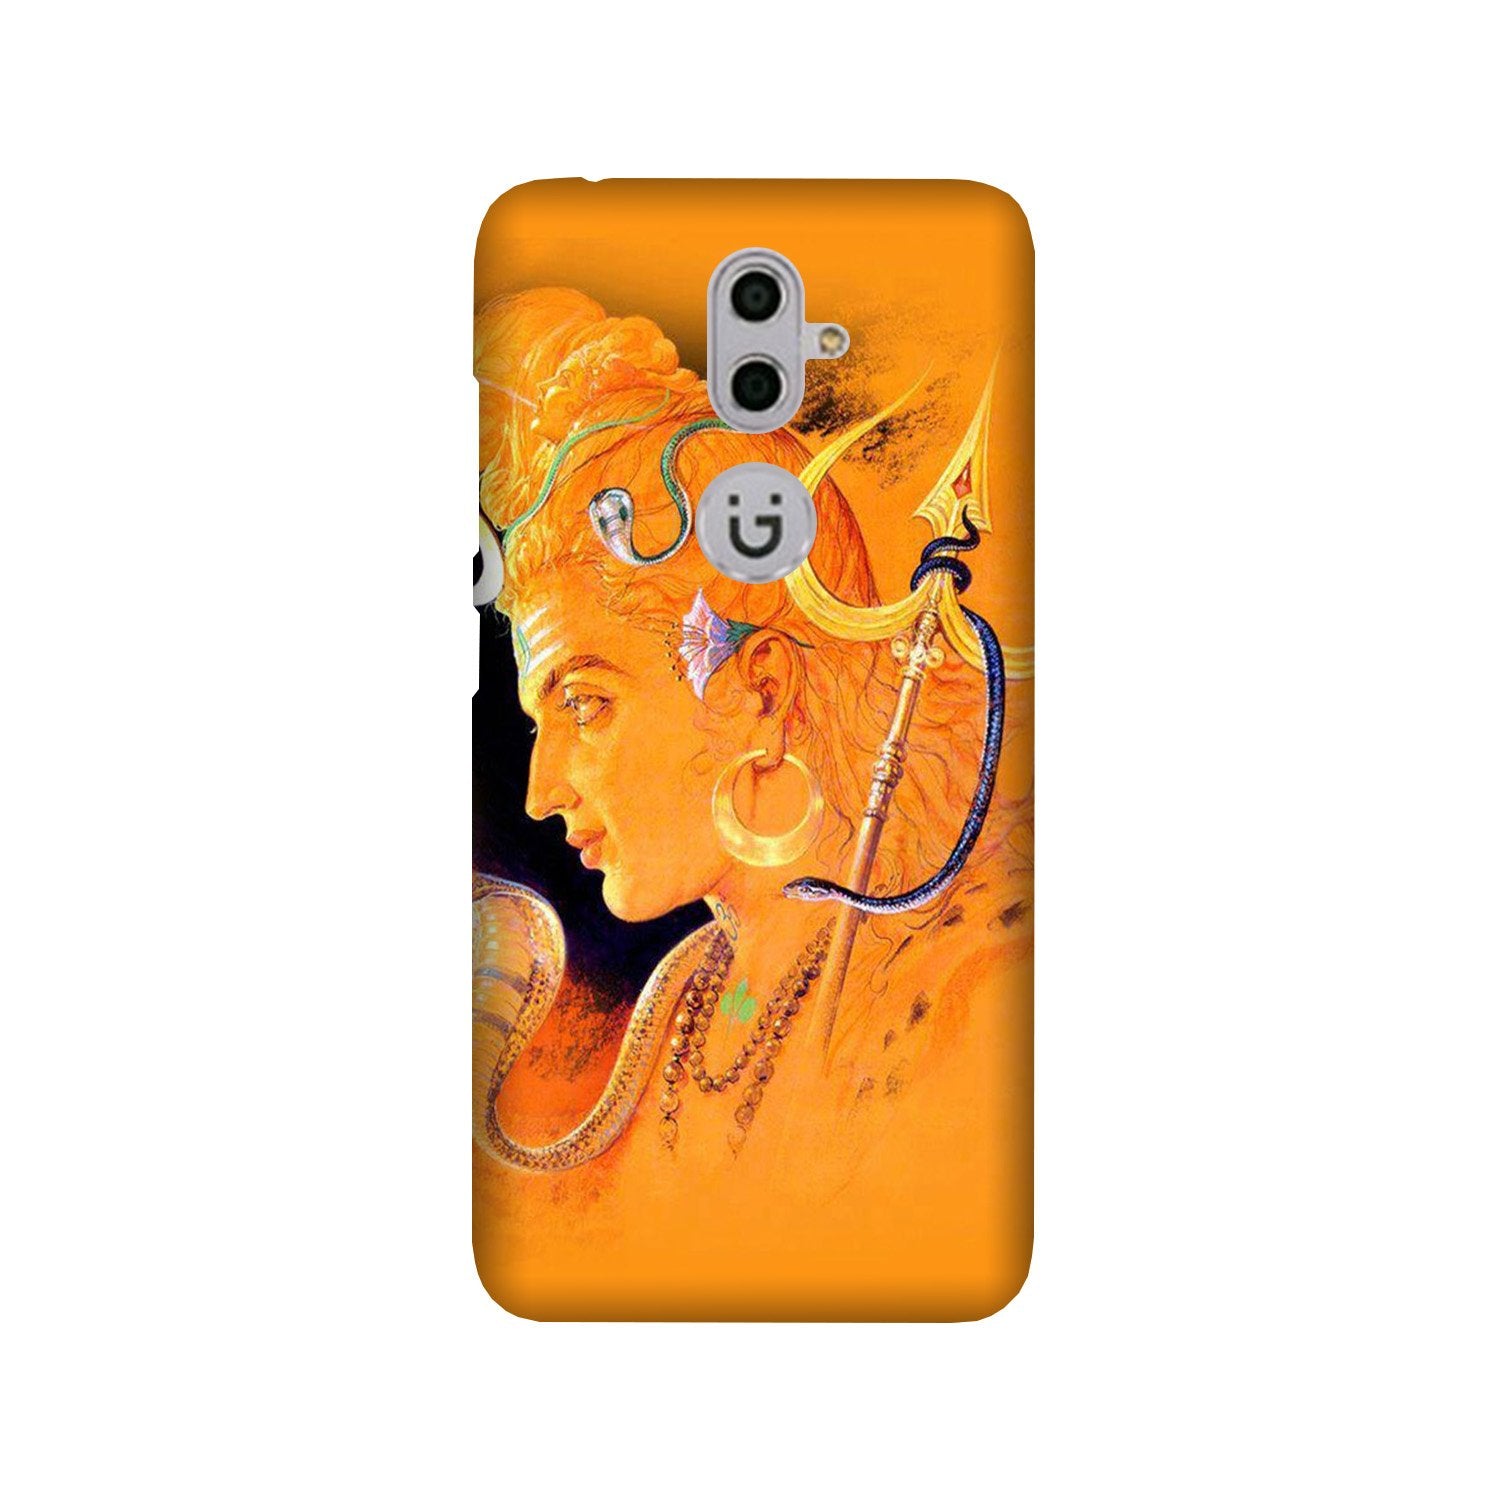 Lord Shiva Case for Gionee S9 (Design No. 293)